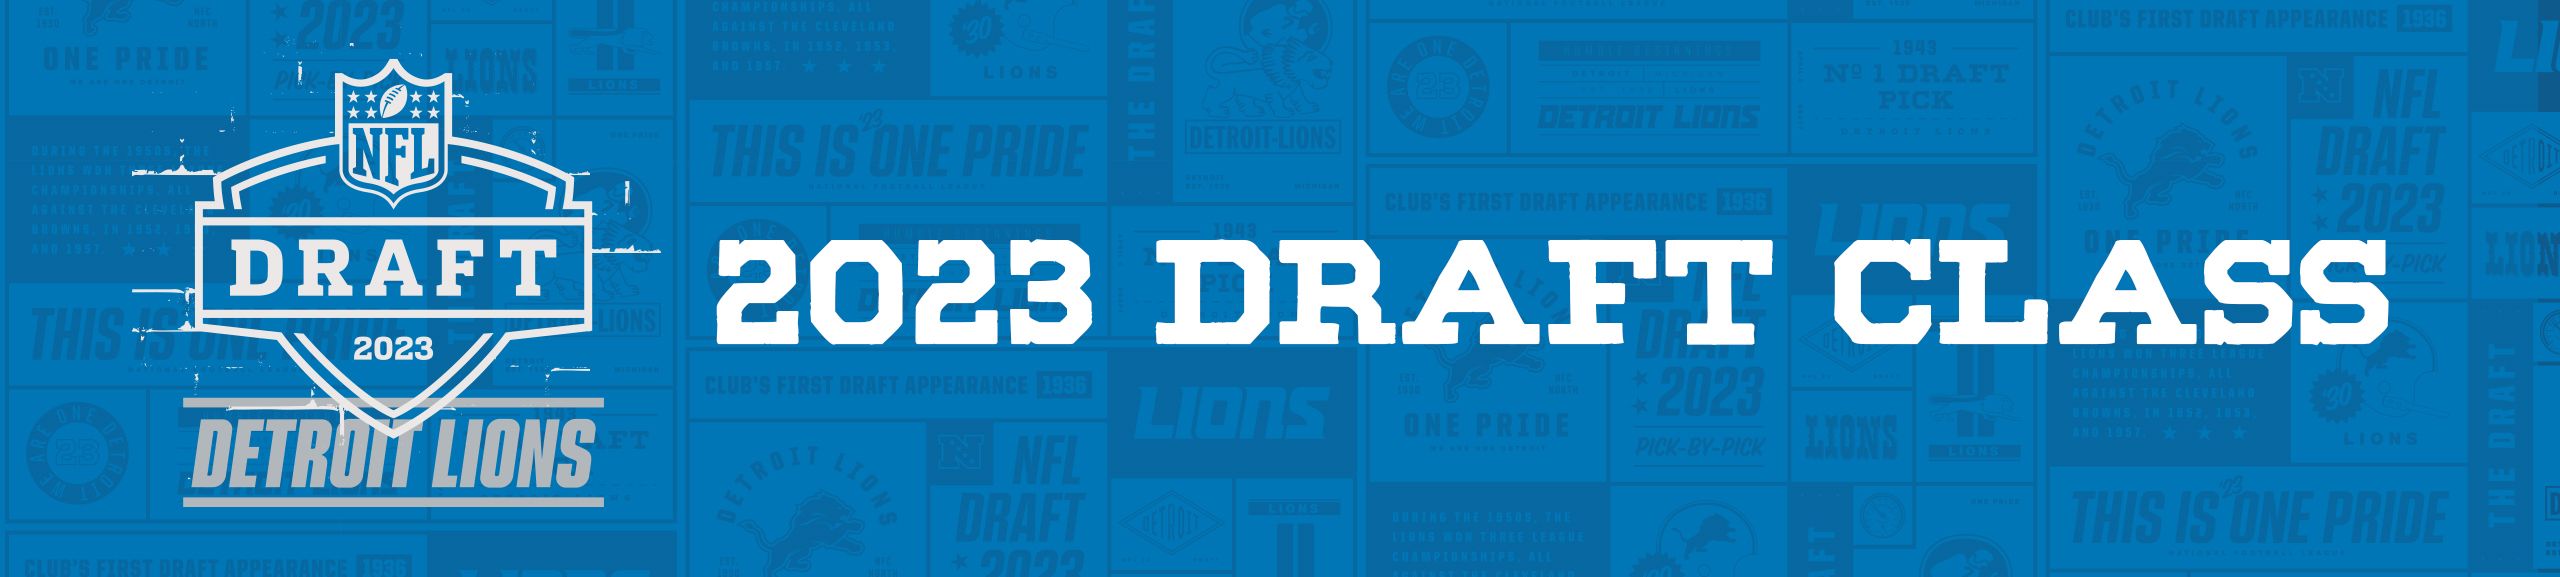 detroit lions draft 2023